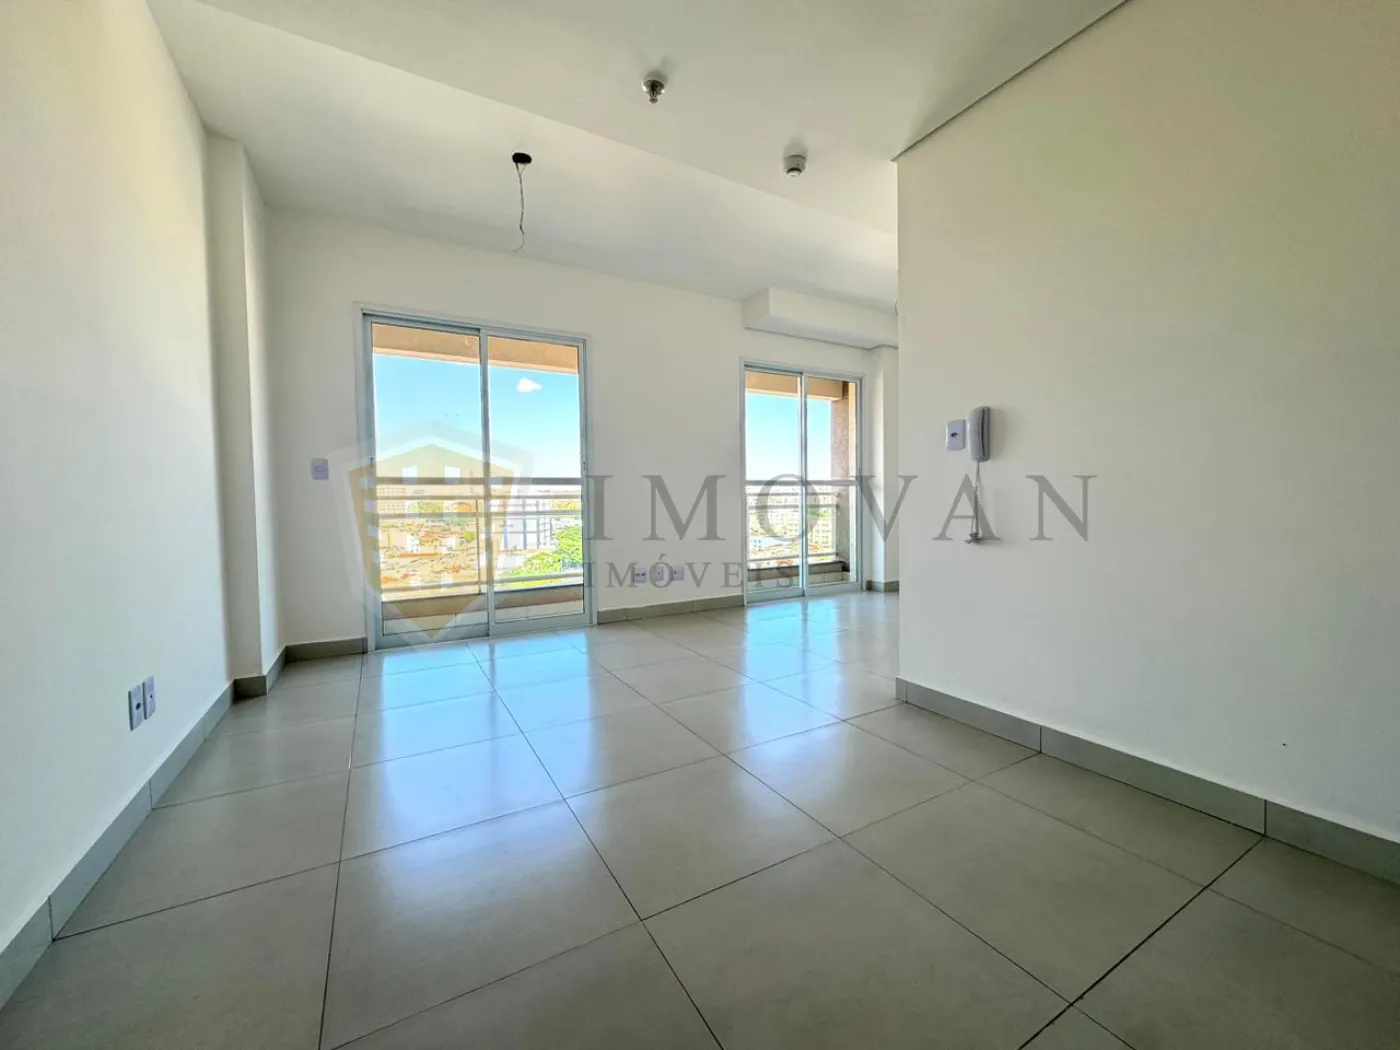 Comprar Apartamento / Kitchnet em Ribeirão Preto R$ 232.500,00 - Foto 2